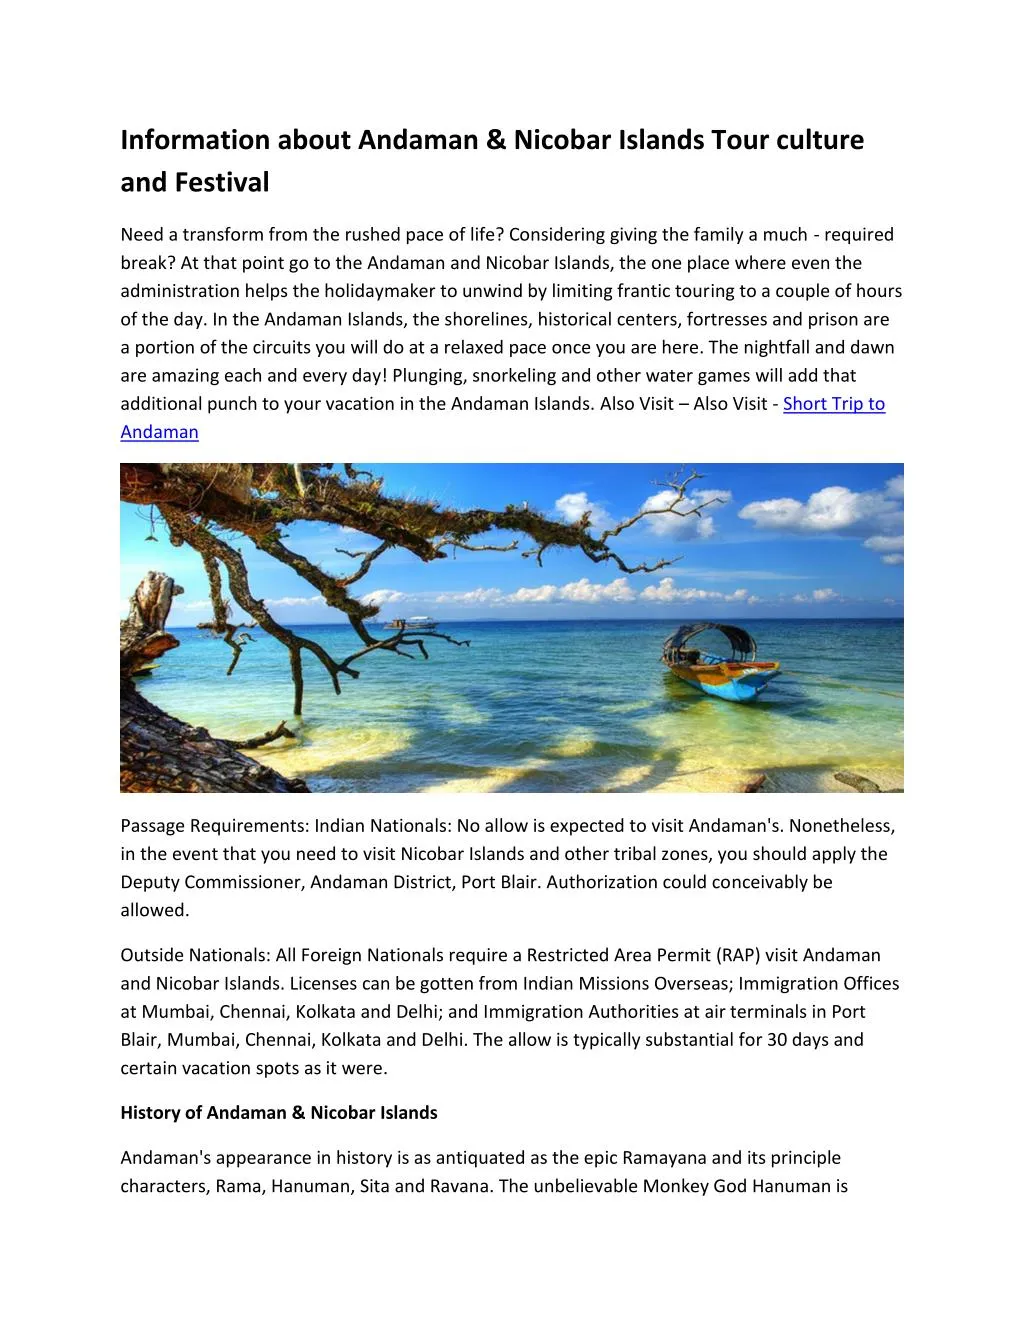 information about andaman nicobar islands tour